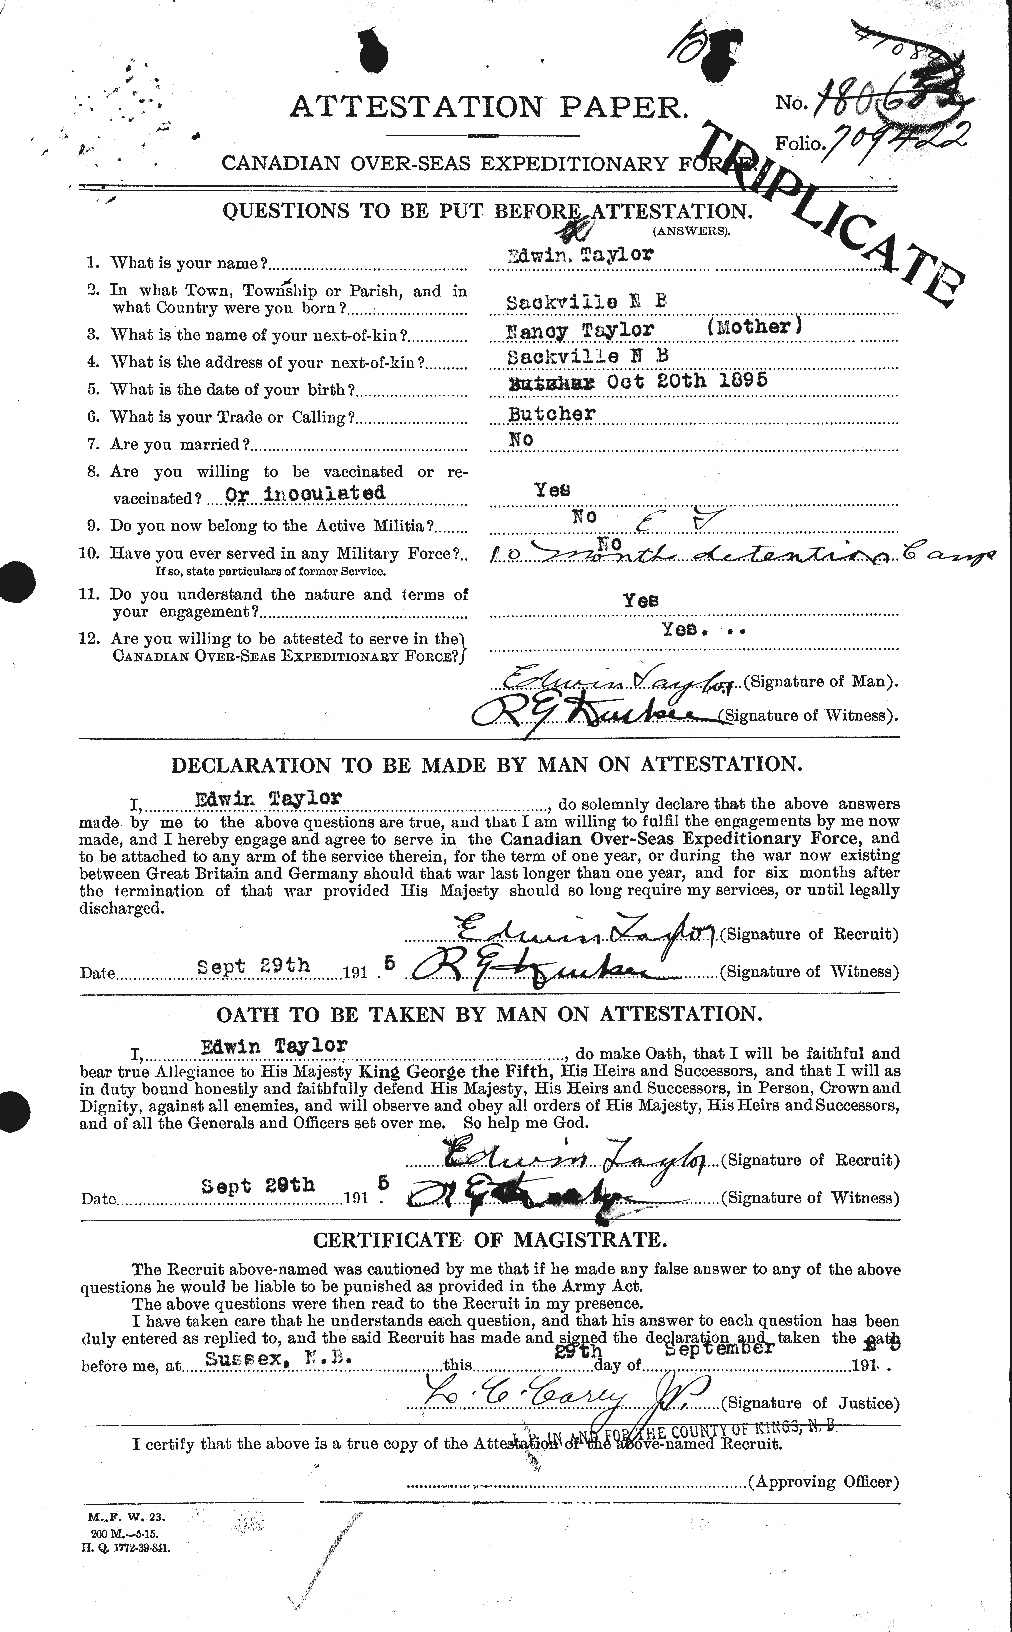 Dossiers du Personnel de la Première Guerre mondiale - CEC 627334a